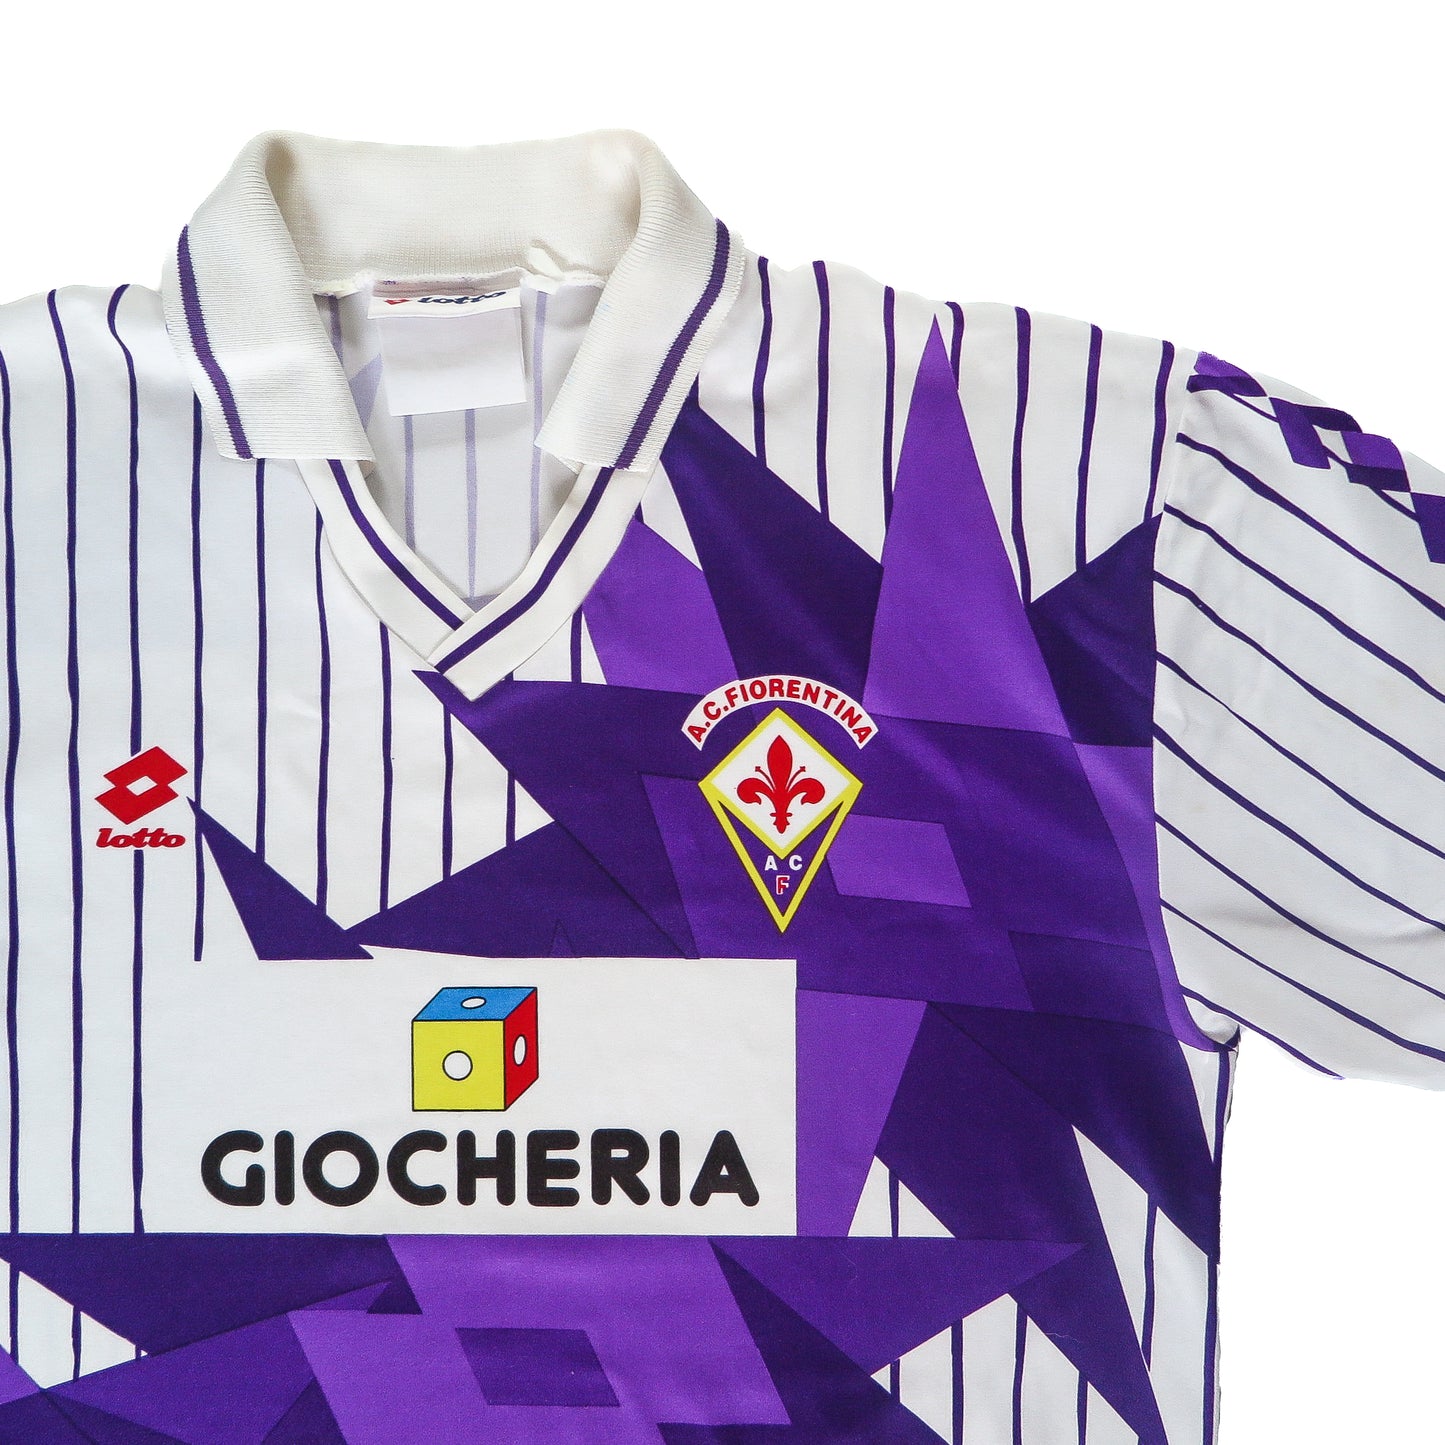 Fiorentina 1991/92 Lotto Away (L)